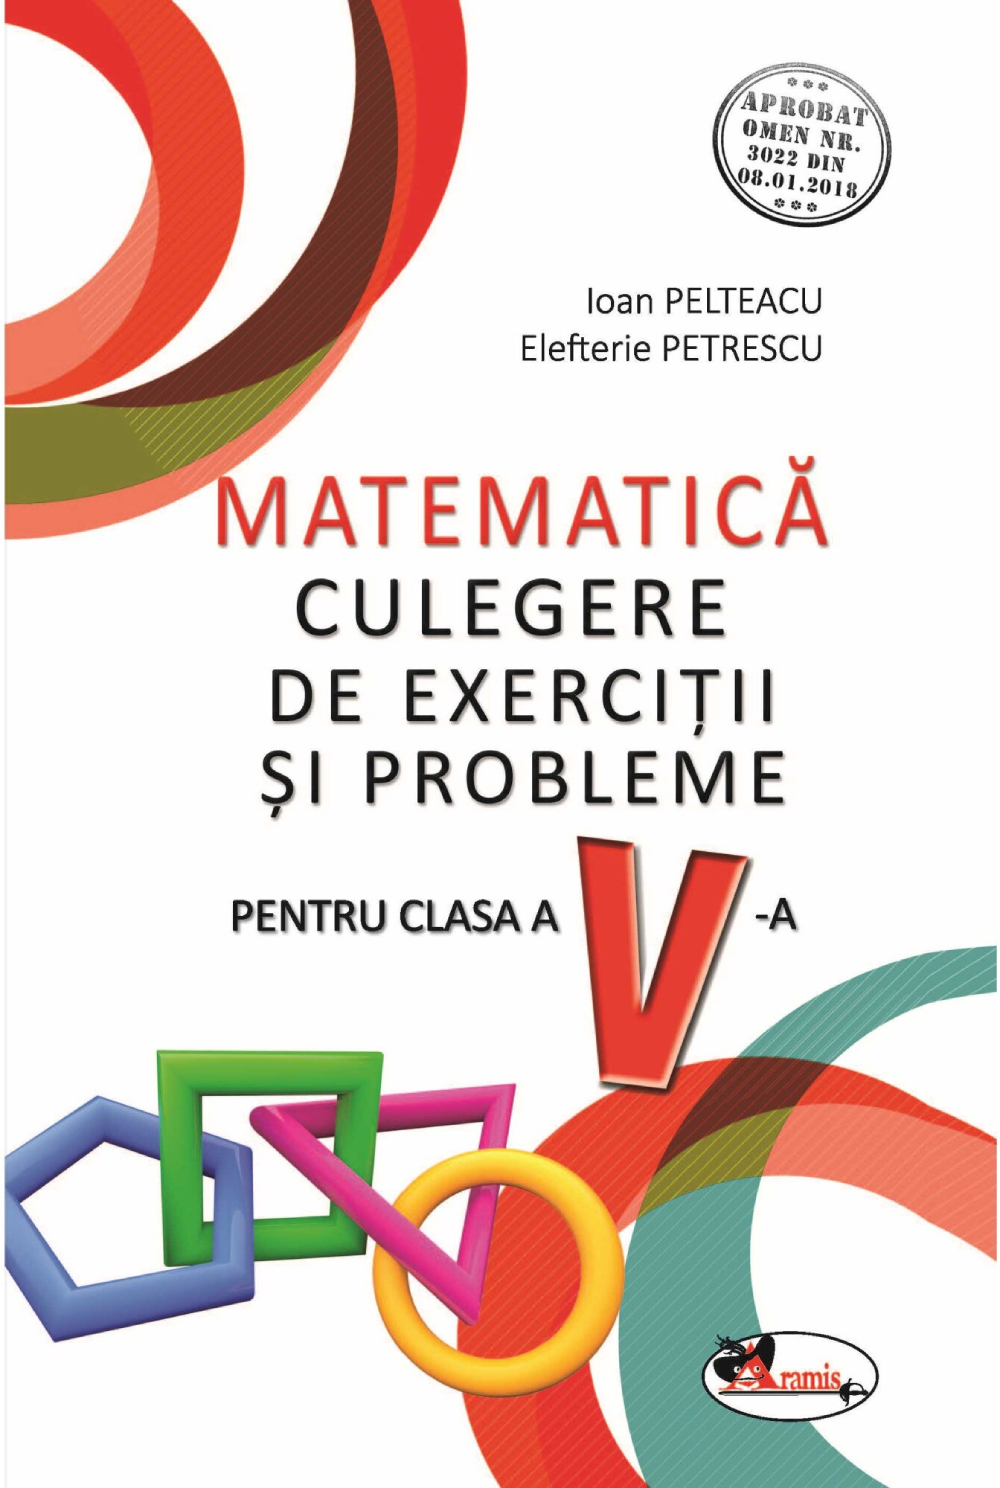 Matematica – Culegere de exercitii si probleme pentru cls a V-a | Ioan Pelteacu, Elefterie Petrescu Aramis Clasa a V-a